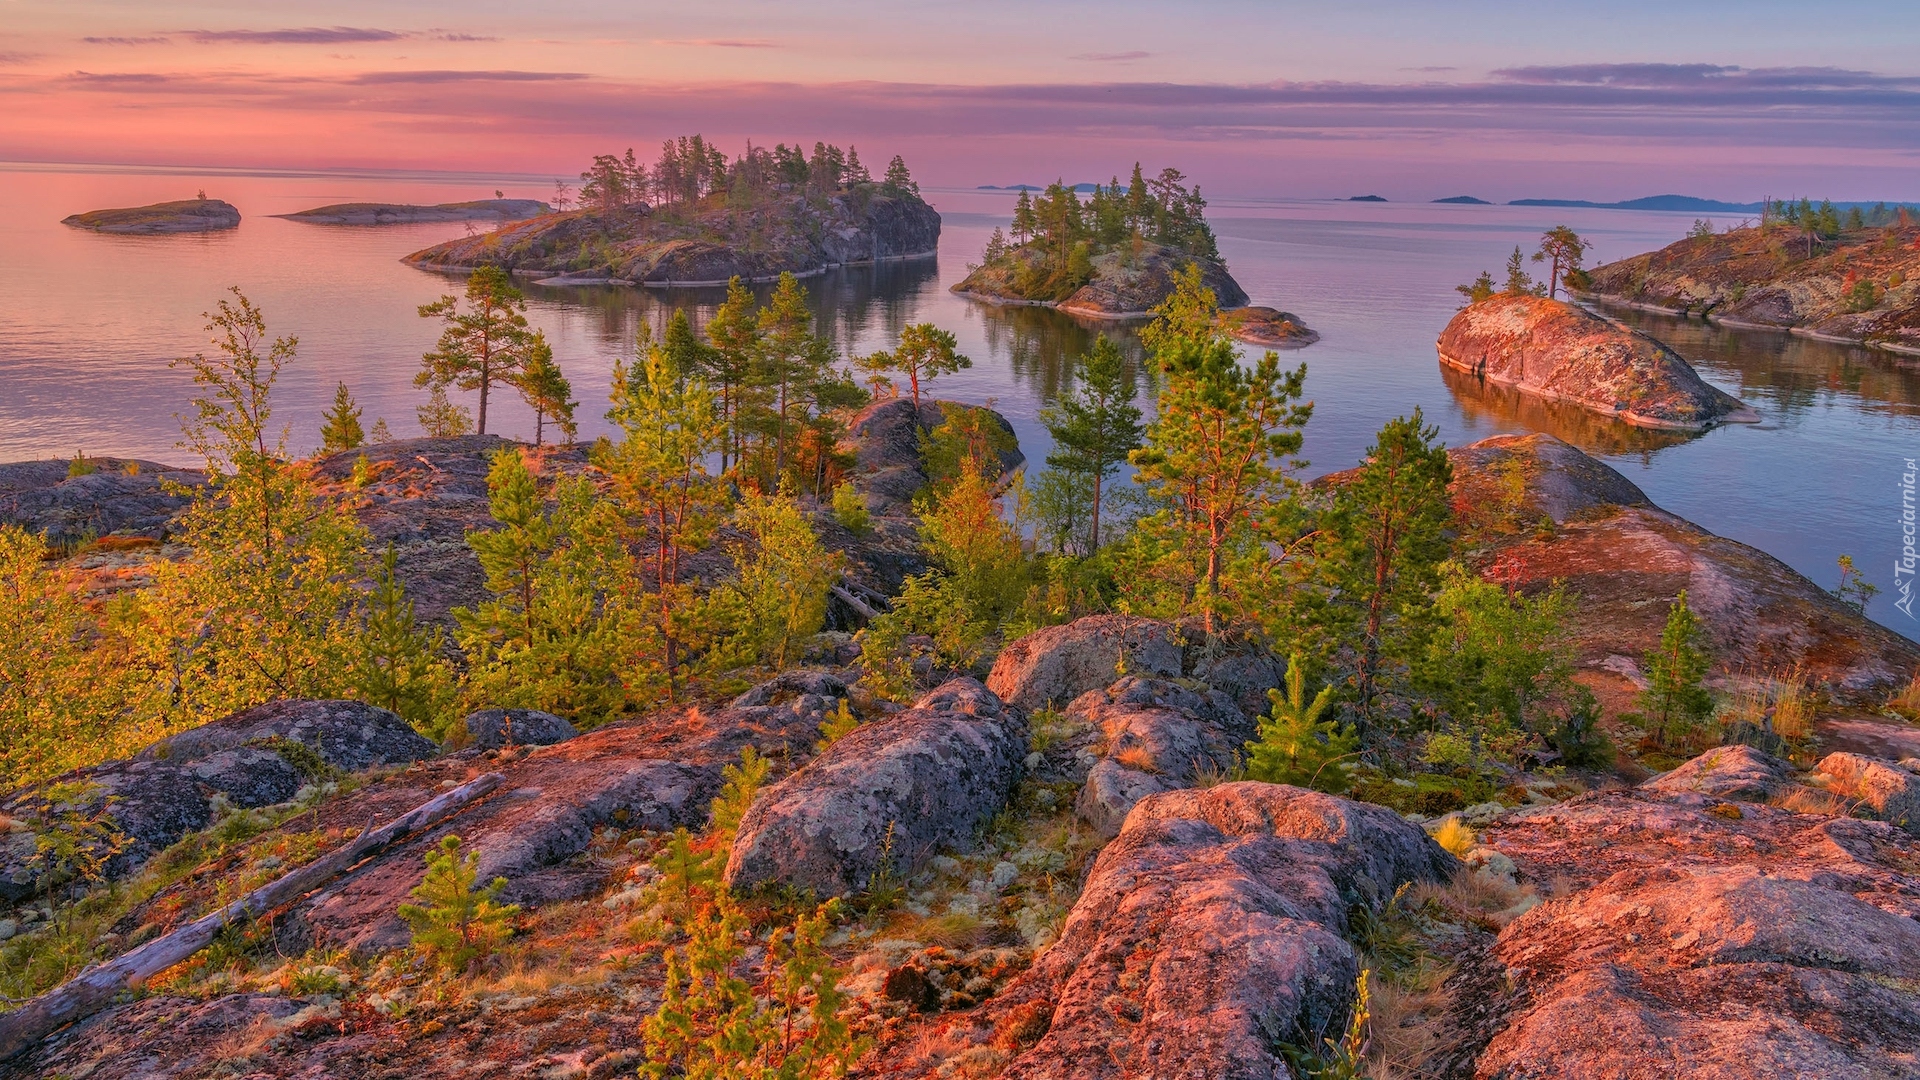 Rosja, Jezioro Ładoga, Wysepki, Skały, Drzewa, Roślinność, Karelia, Rosja